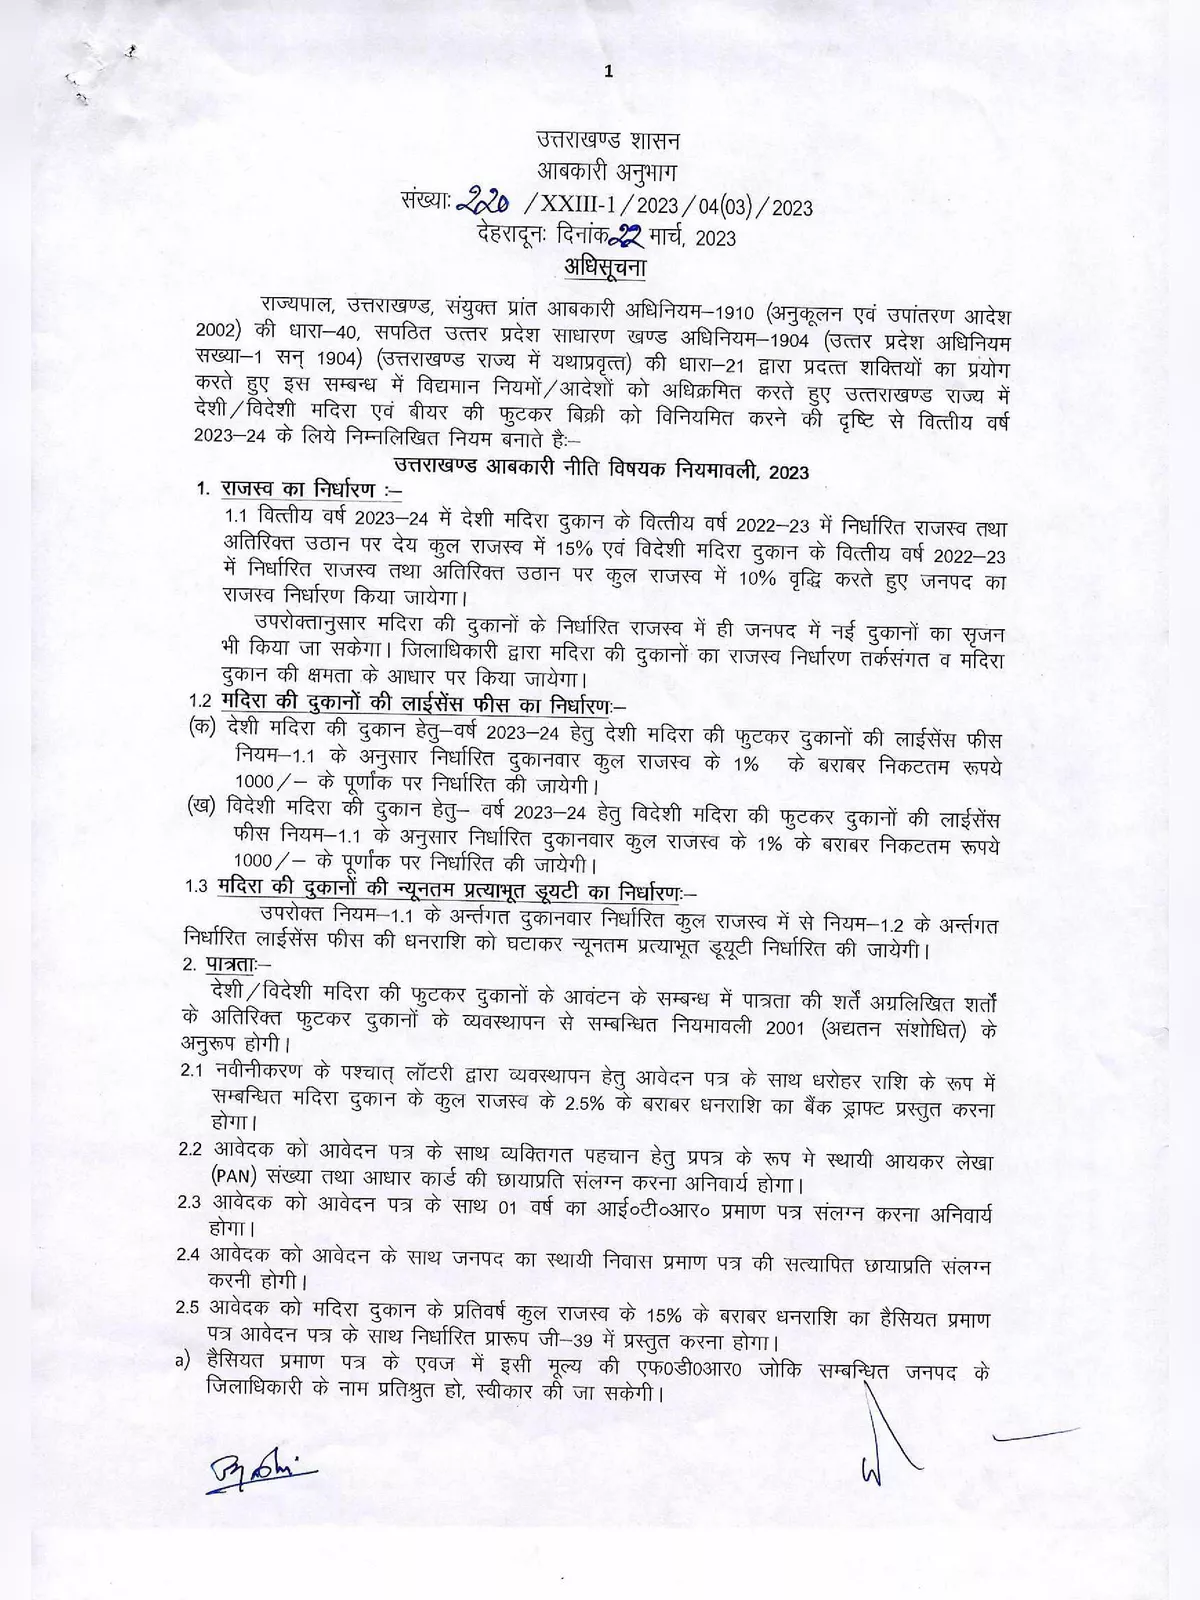 Uttarakhand Excise Policy 2021-22